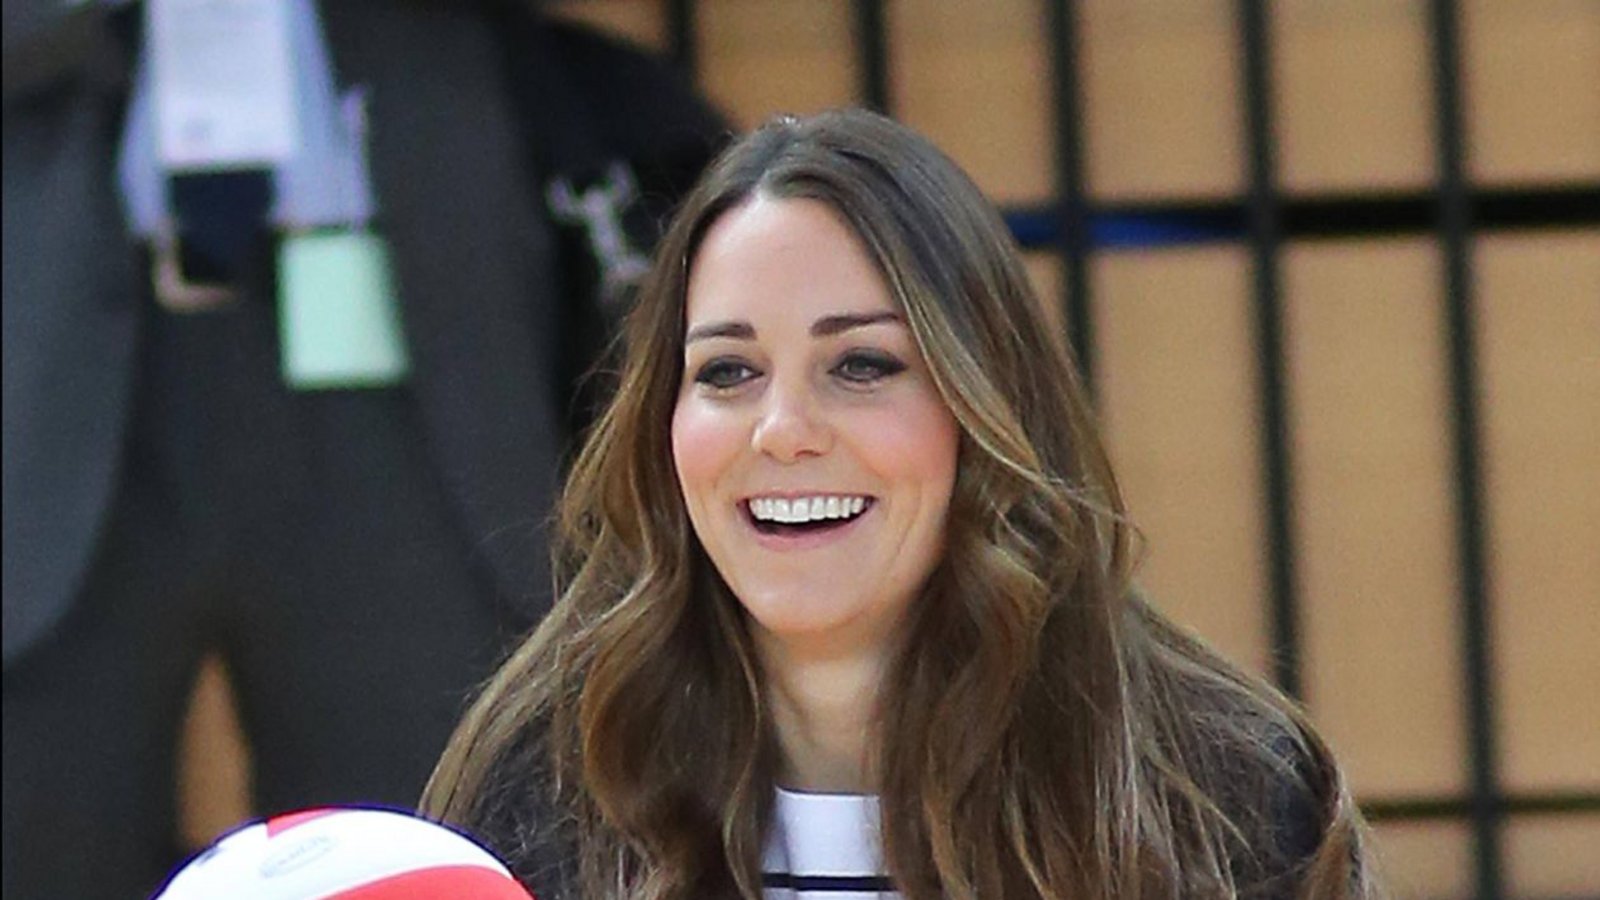 2013: Bei einem Event im Olympiapark in London zeigte die Herzogin, dass sie auch in hohen Wedges Volleyball spielen kann. Einmal mehr trug Kate dabei einen dunkelblauen Blazer zu einem Streifenshirt.Foto: imago stock&people/iImages